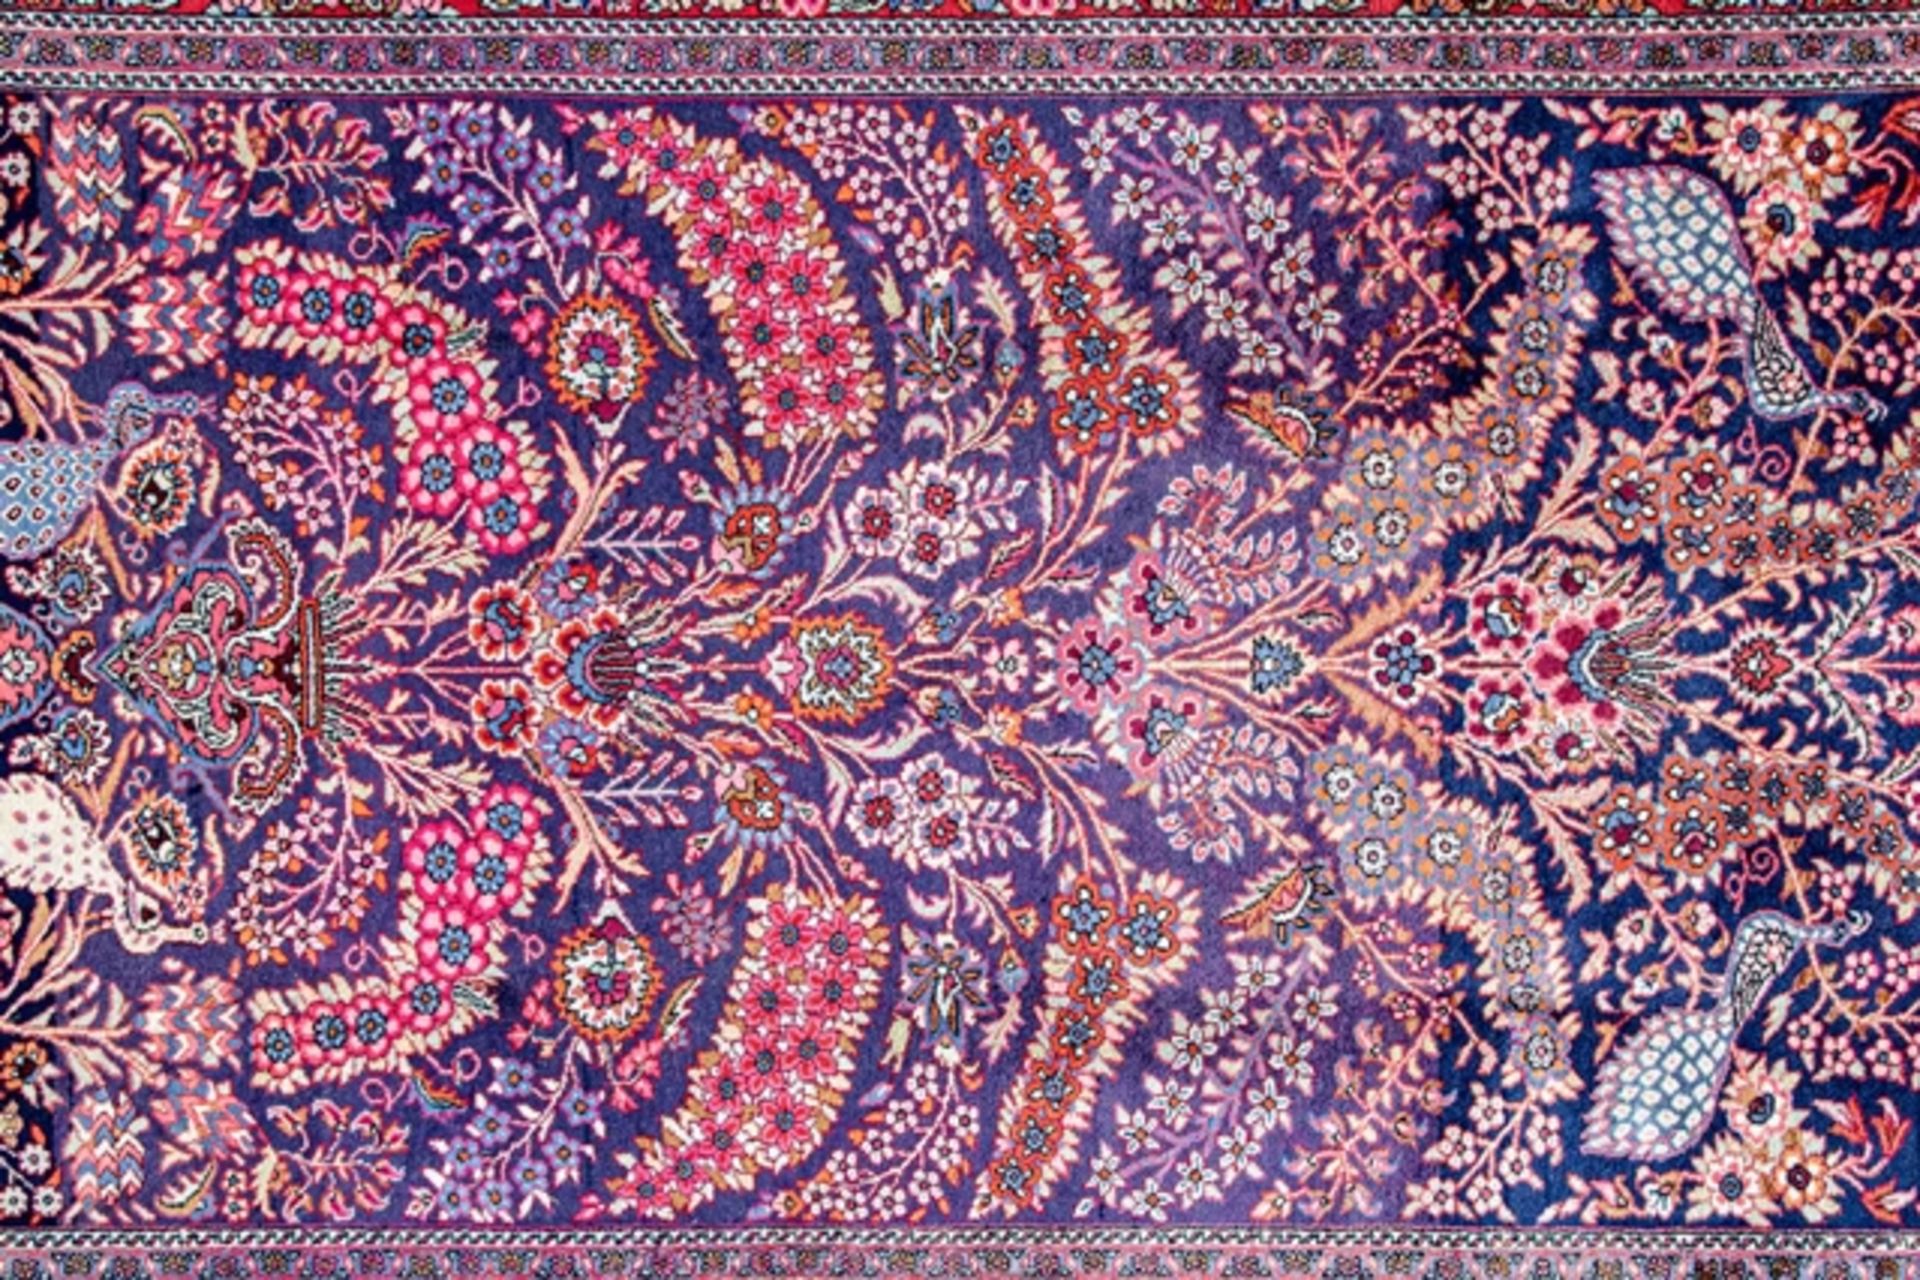 Große iranische Teppichbrücke, aufwändiger floraler und faunaler Dekor, breite, rotgrundige Hauptbo - Bild 2 aus 7